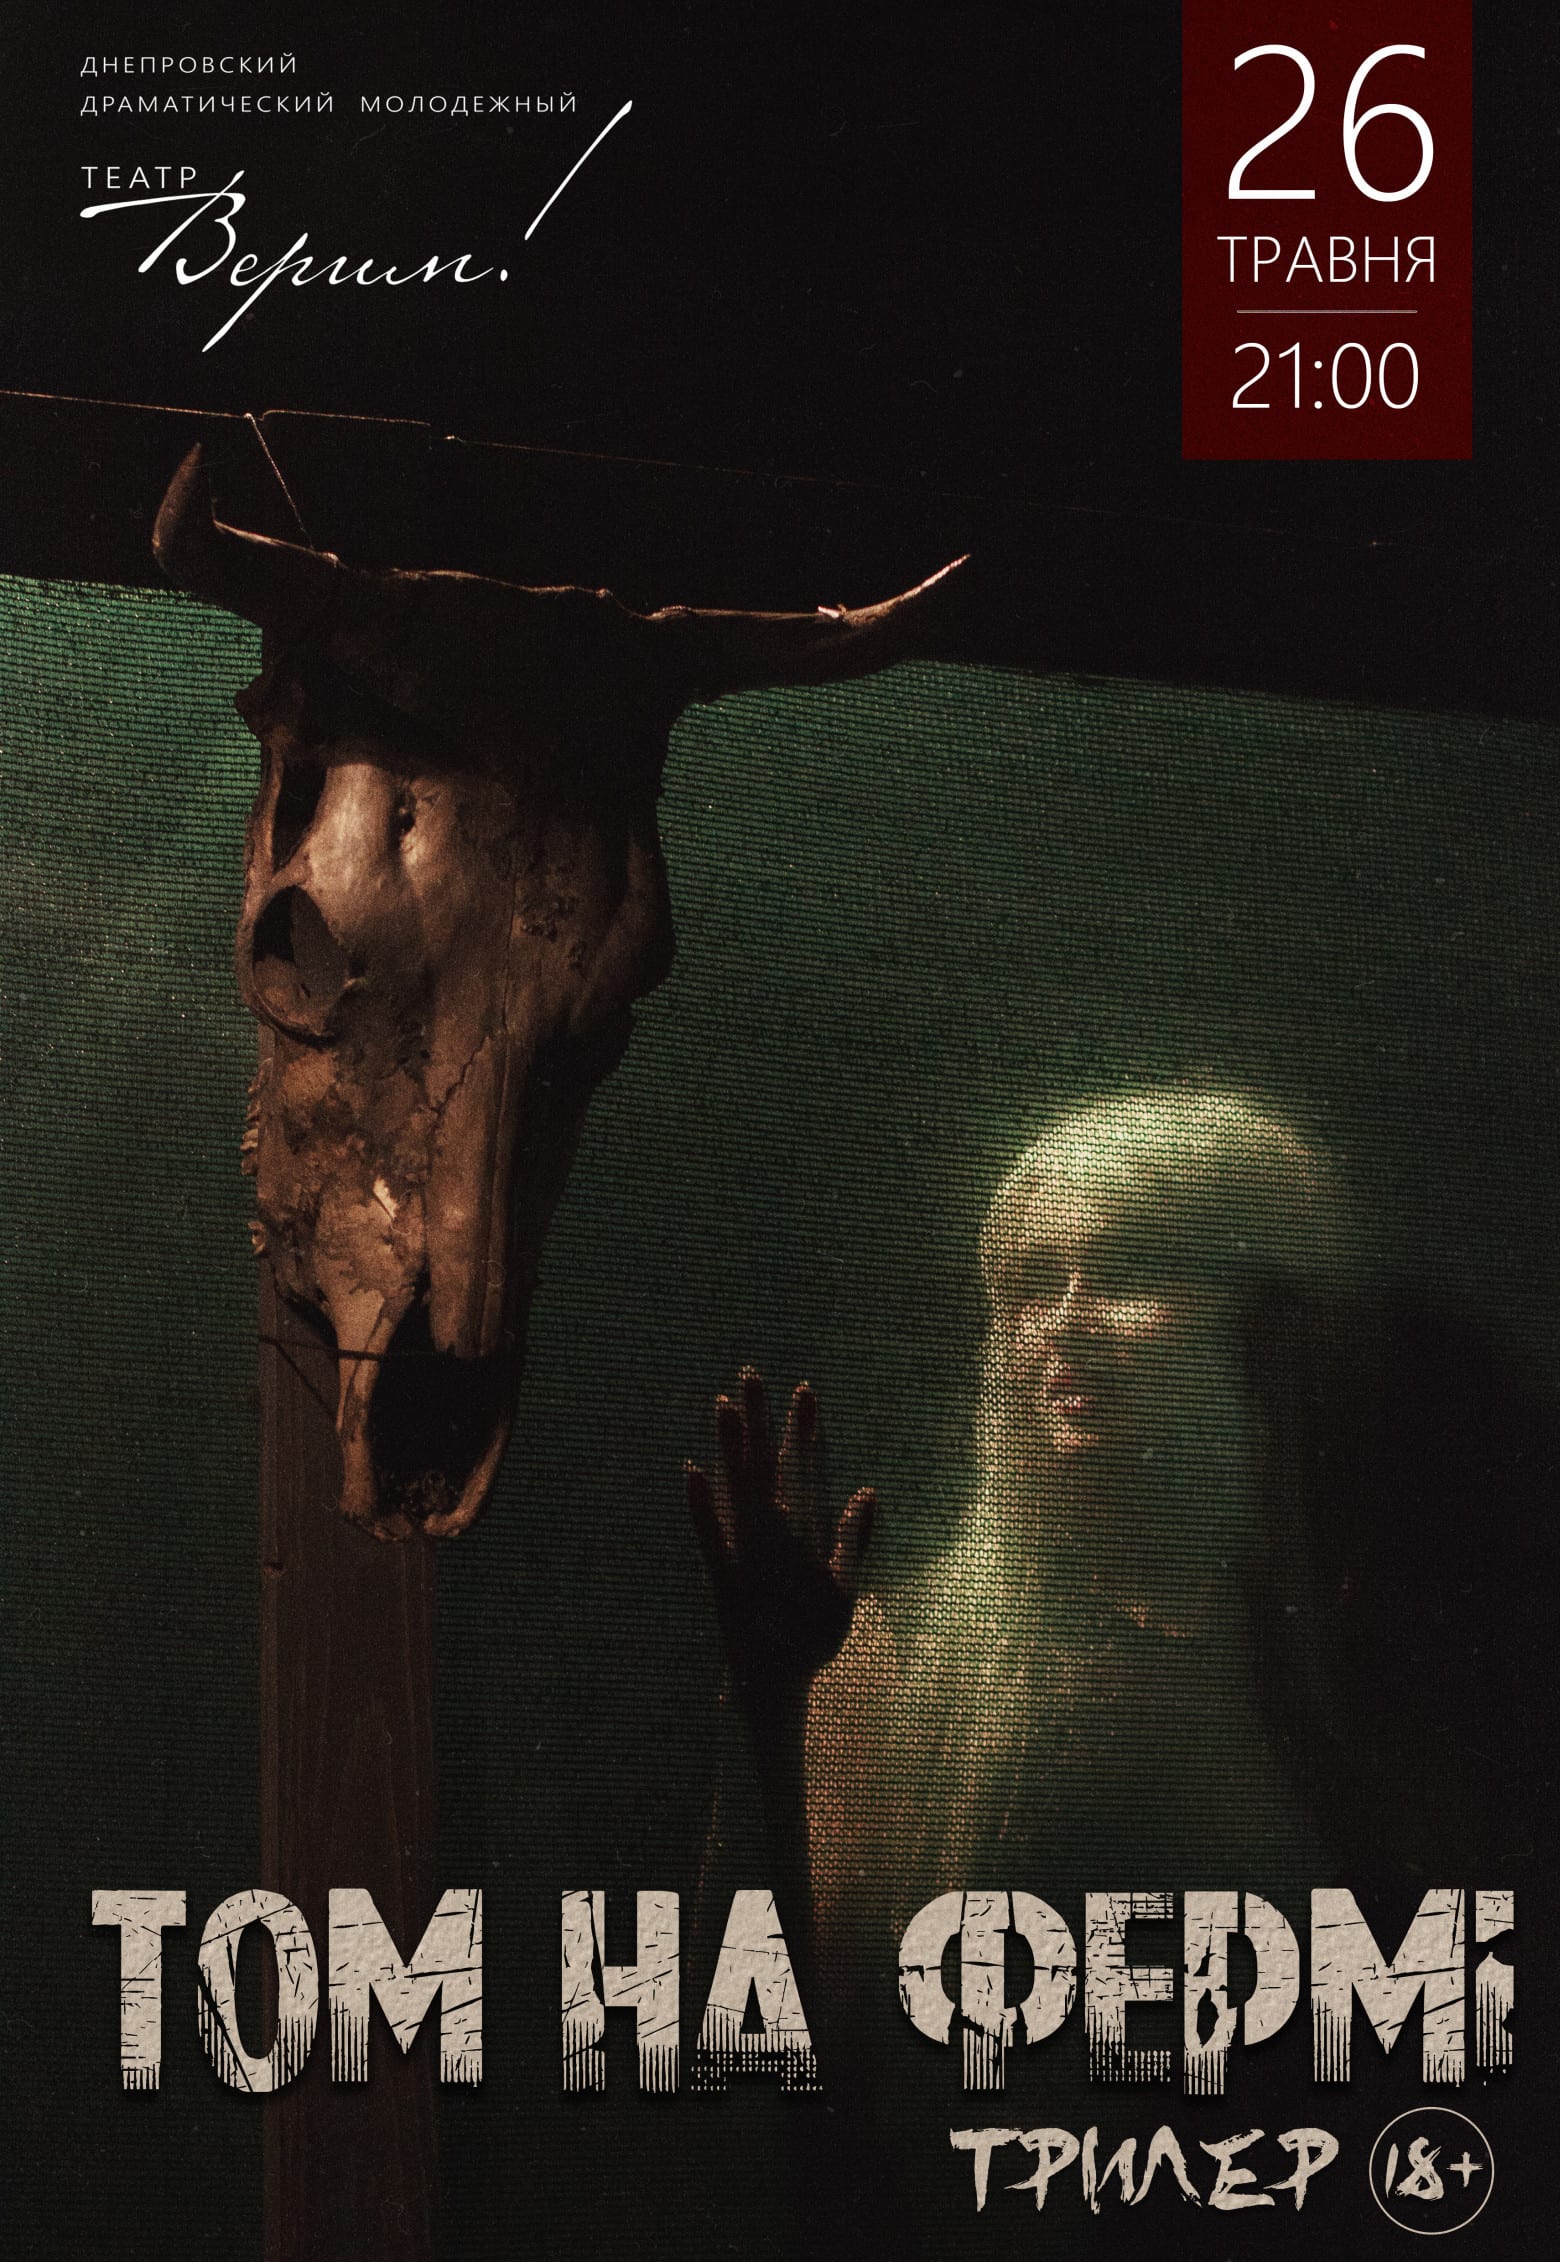 Театр Верим - Том на ферме Днепр, 26.05.2019, цена, купить билеты. Афиша Днепра